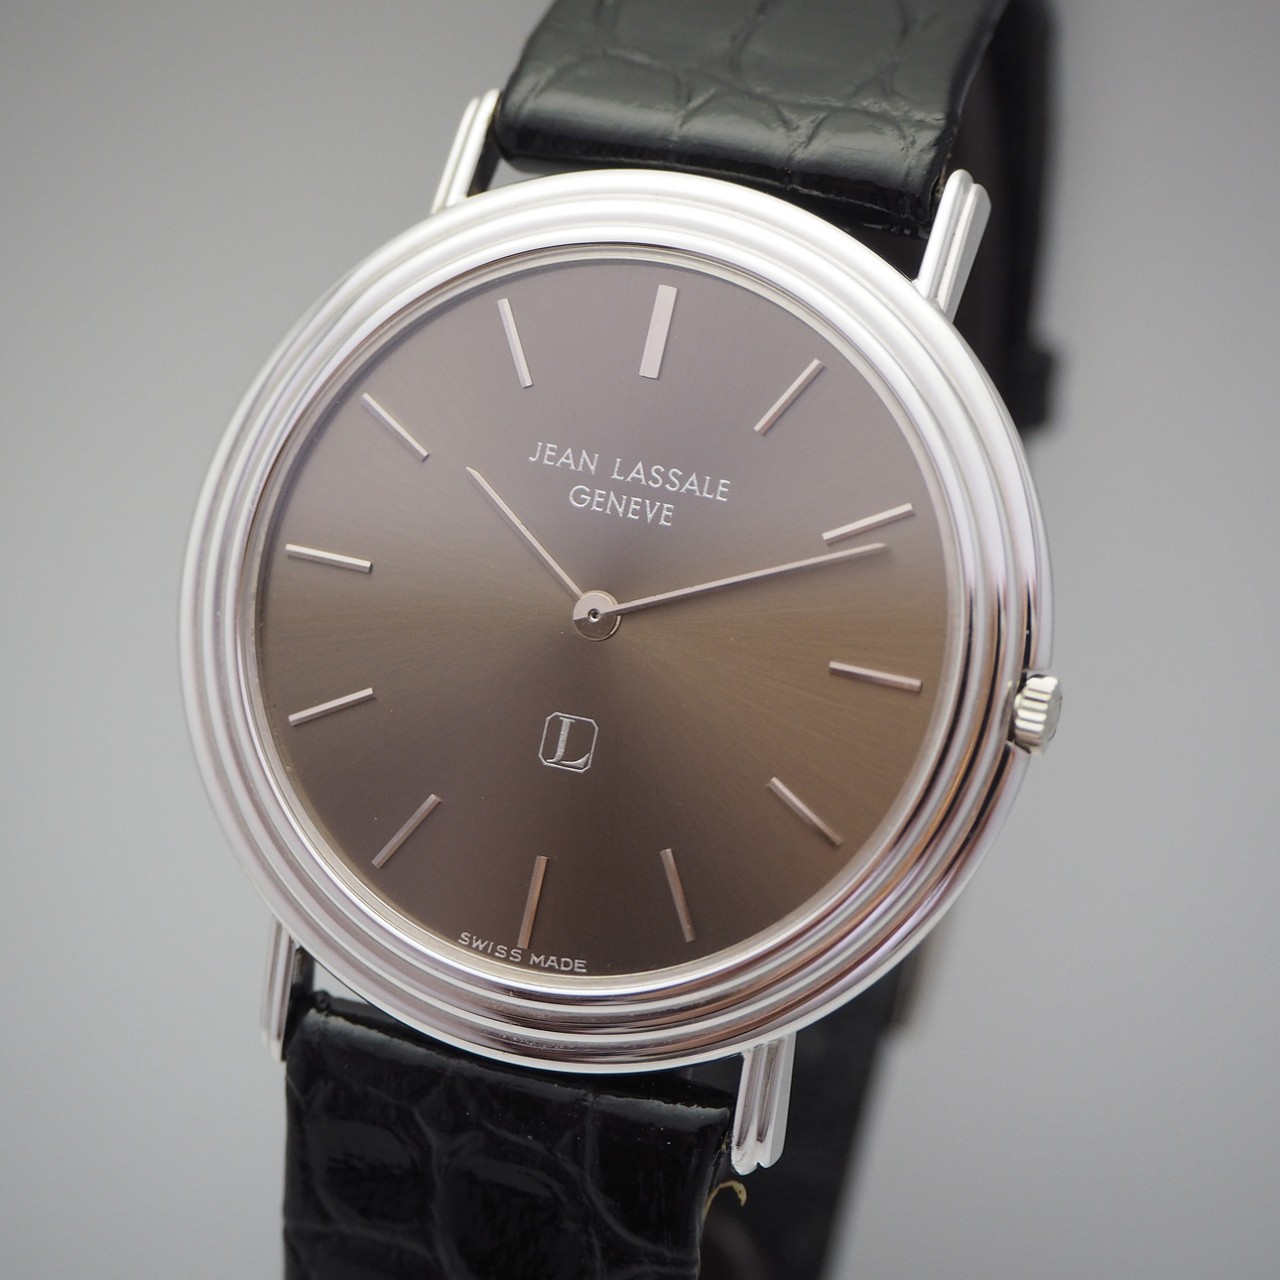 Jean Lassale SUPER Ultra Flat 3mm, Cal. 1200, WG18k/750, Calatrava, collectors watch, Ultra Rare